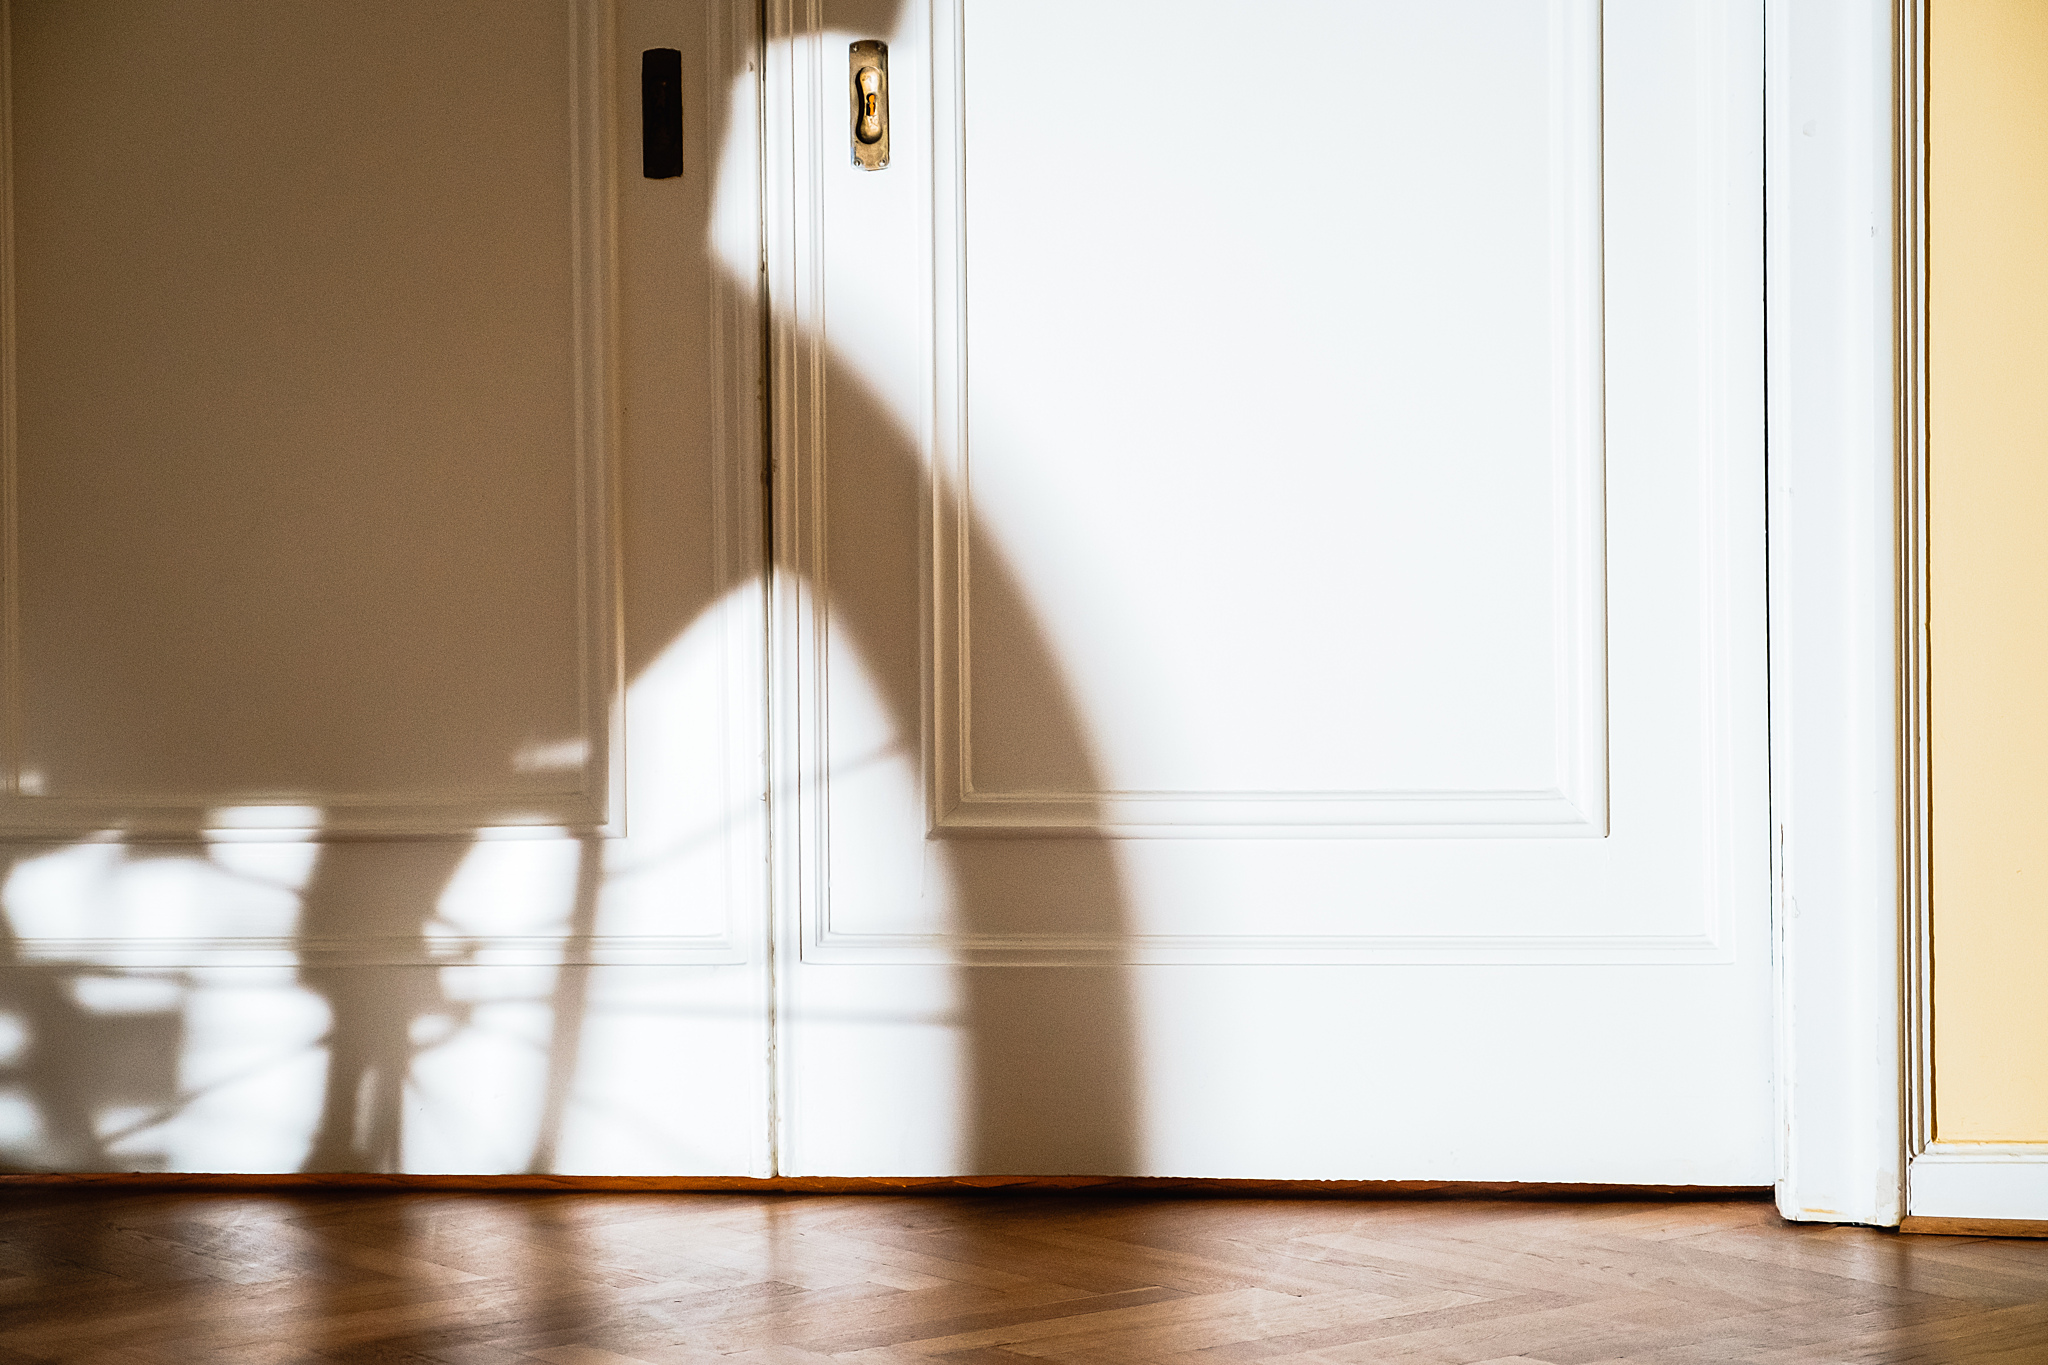 Der Schatten eines Rolstuhls ist in einem Zimmer an einer weißen Tür zu sehen.